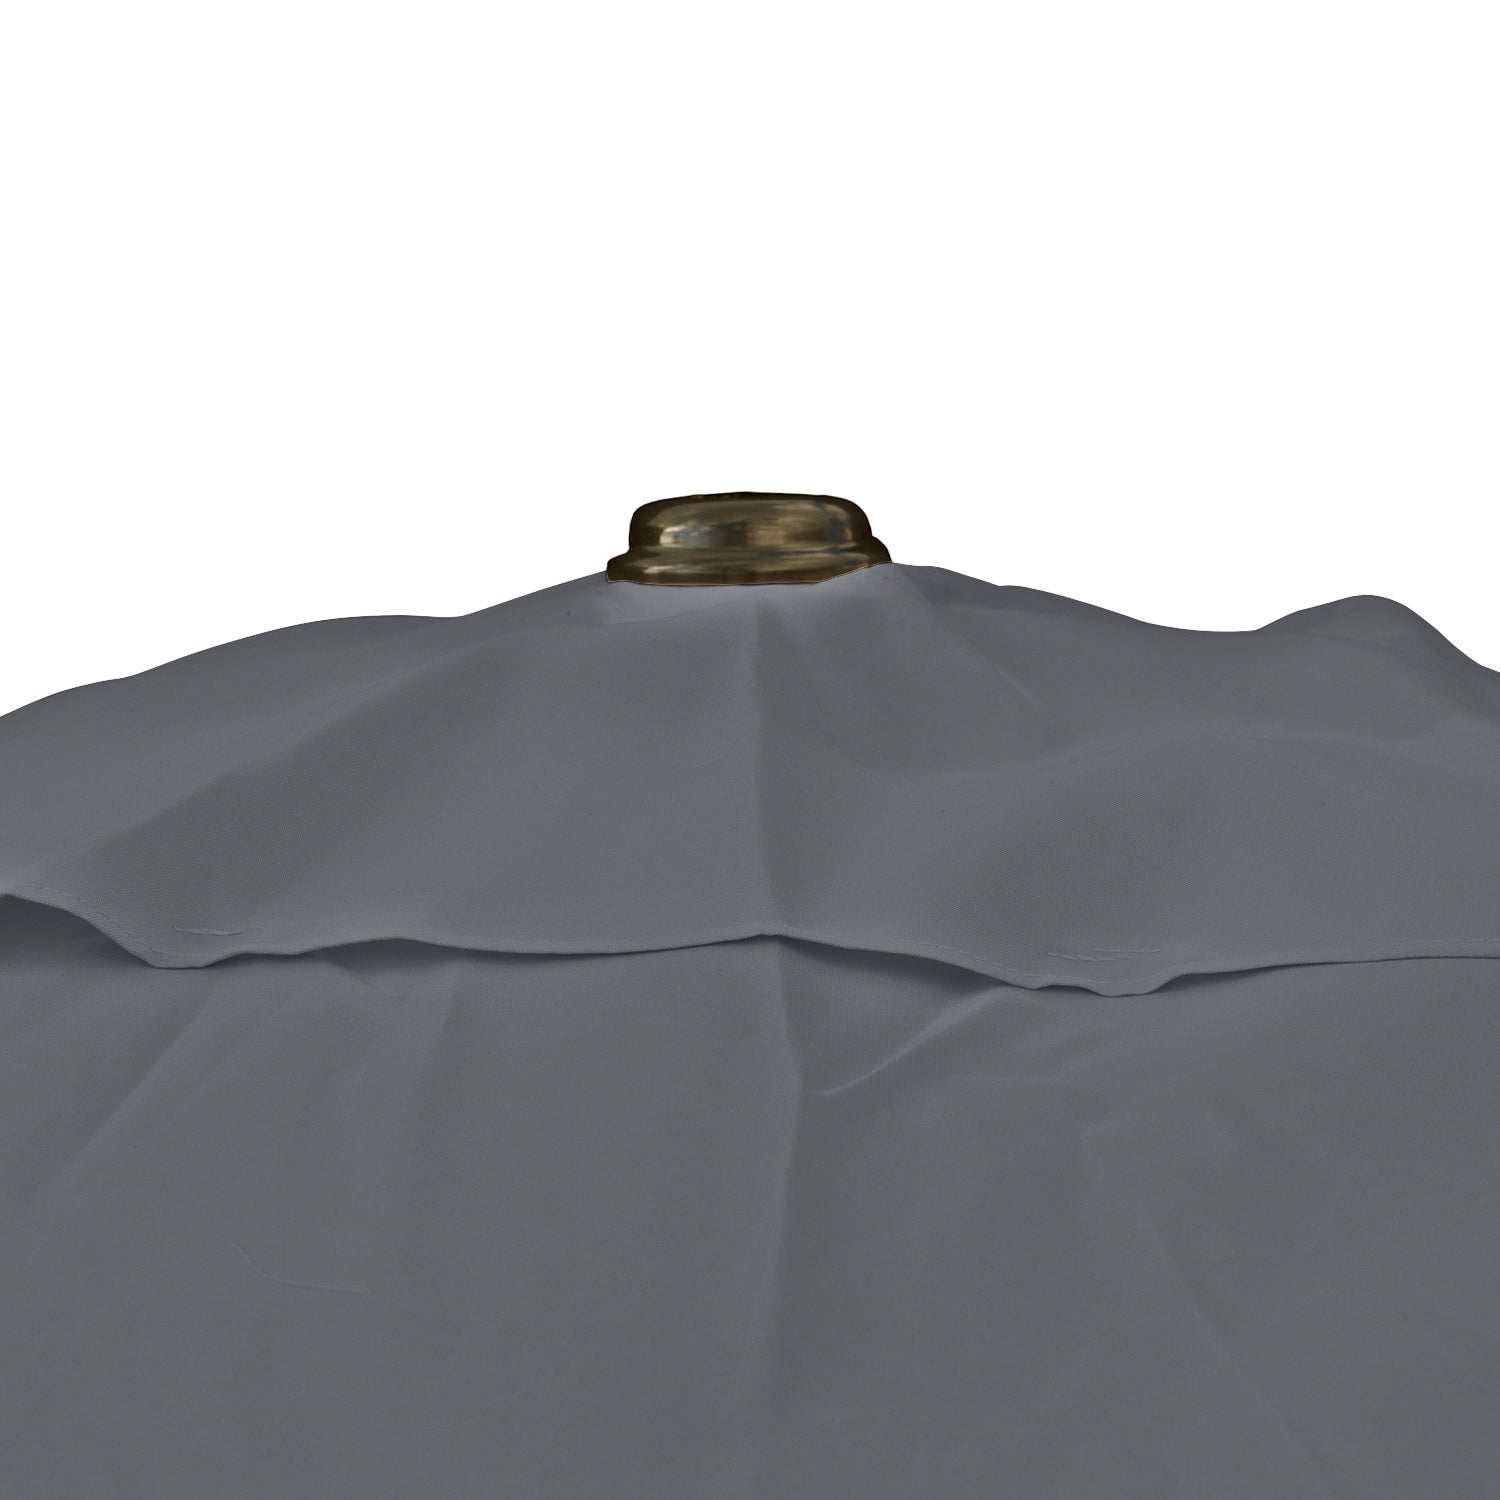 Kopu® rechthoekige parasol Bilbao 150x250 cm met hoes - Grey